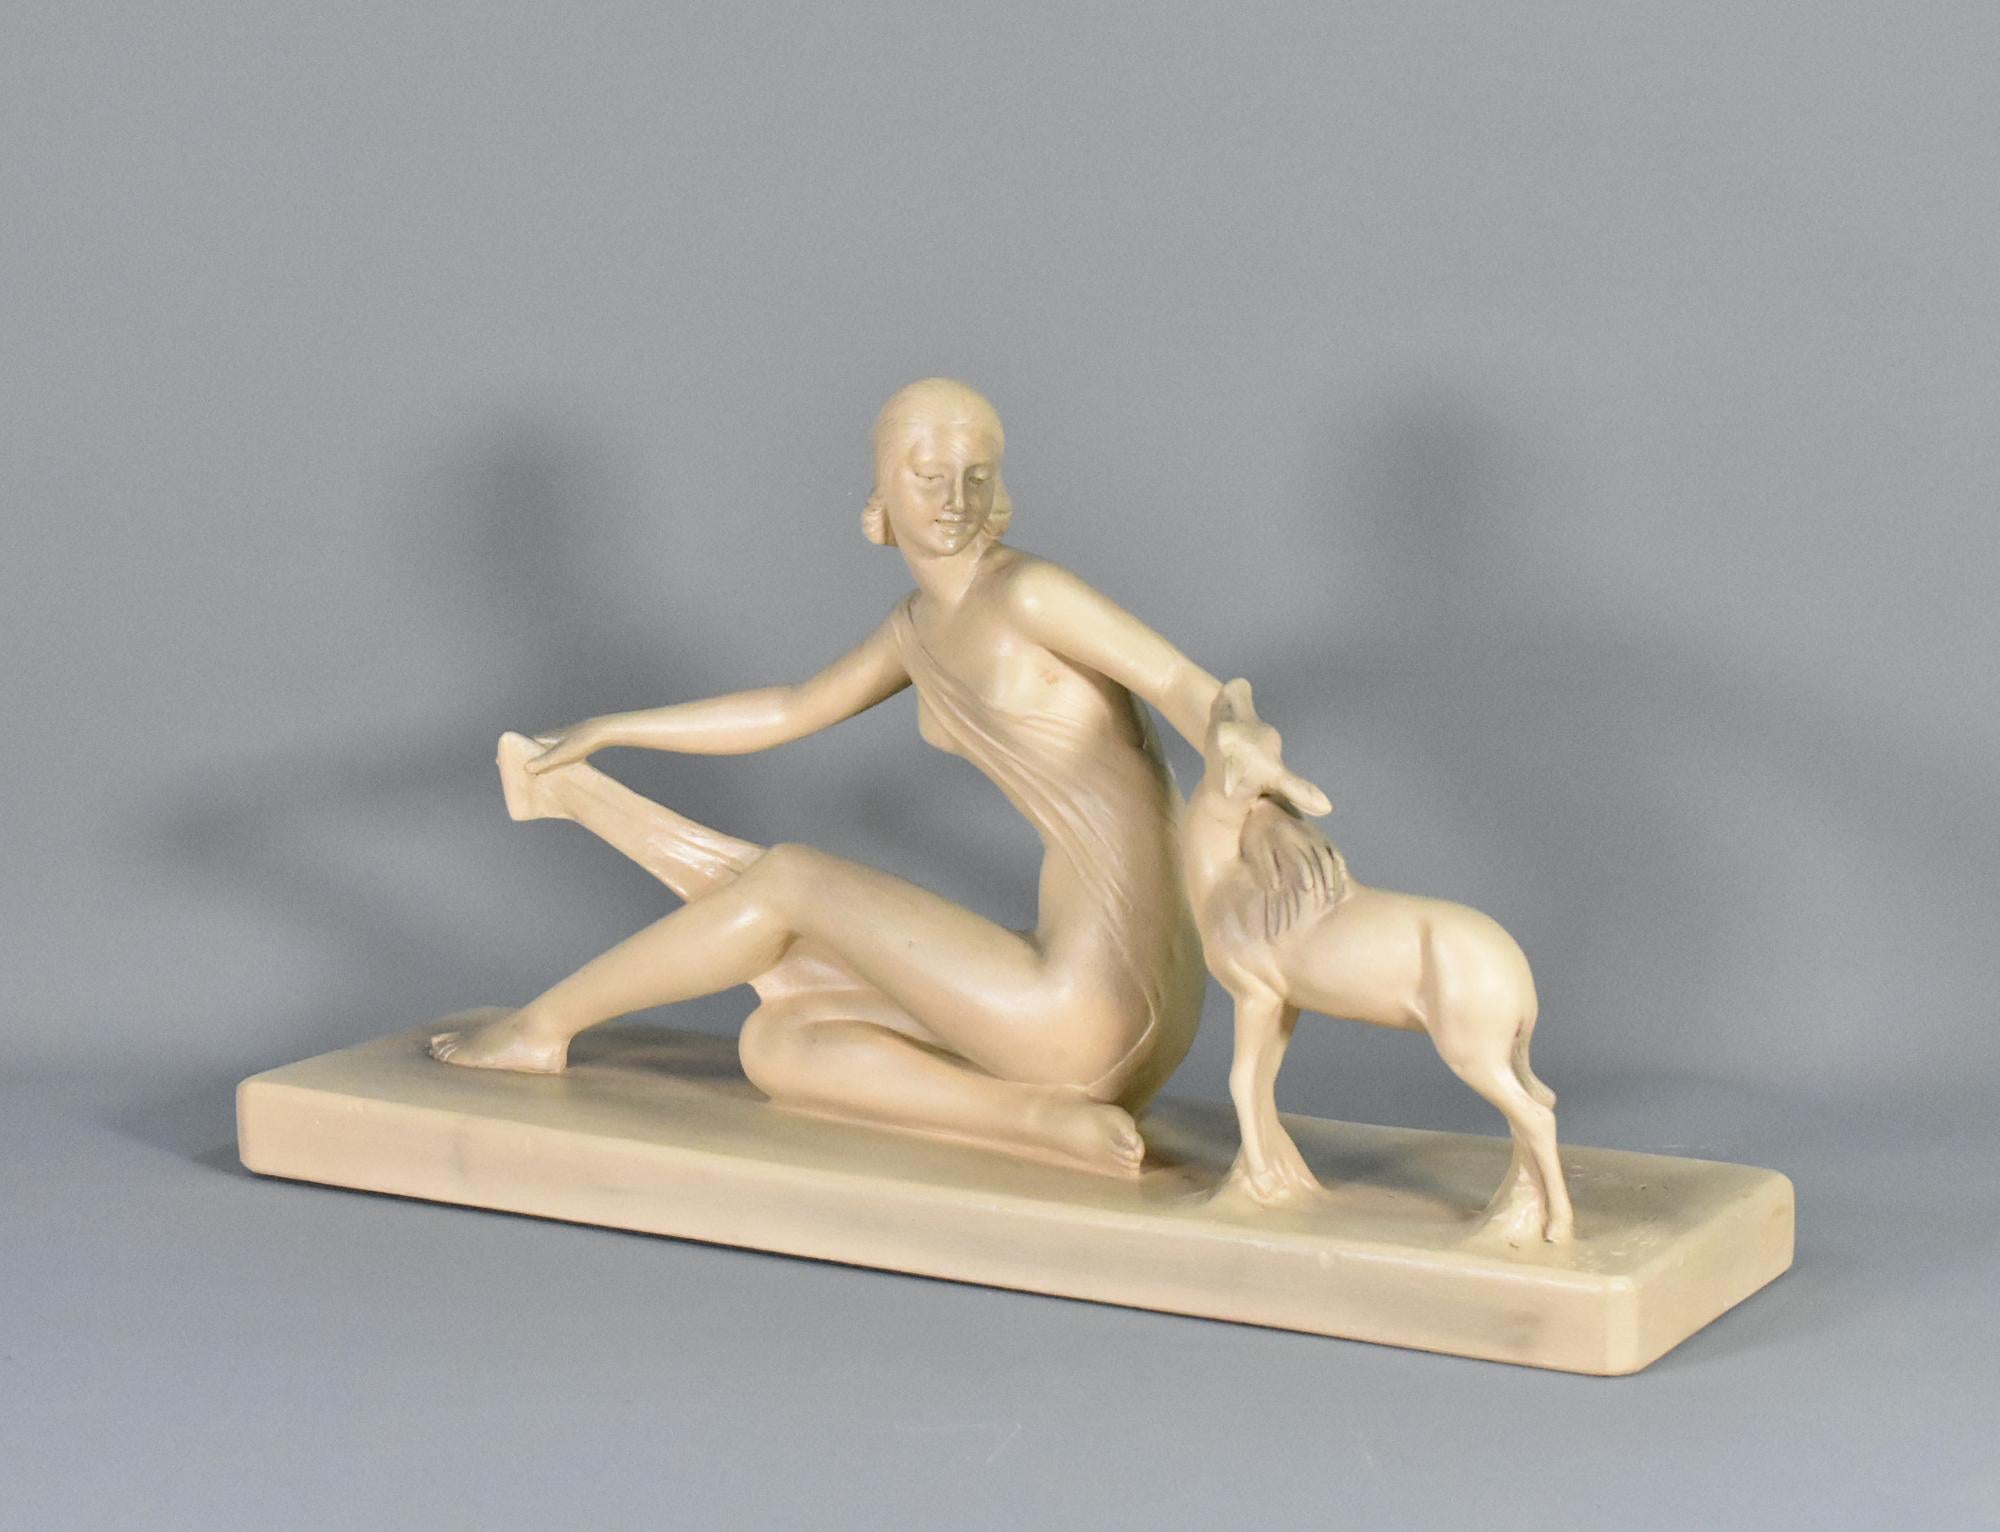 Art Deco Skulptur in Gips signiert S Melani 

Eine reizvolle Art-Déco-Skulptur des Italieners Salvatore Melani (1902 - 1934), die eine sitzende Frau mit ausgestreckter Hand in Richtung eines jungen Rehs zeigt. Die Frau trägt ein Wickelkleid, das sie